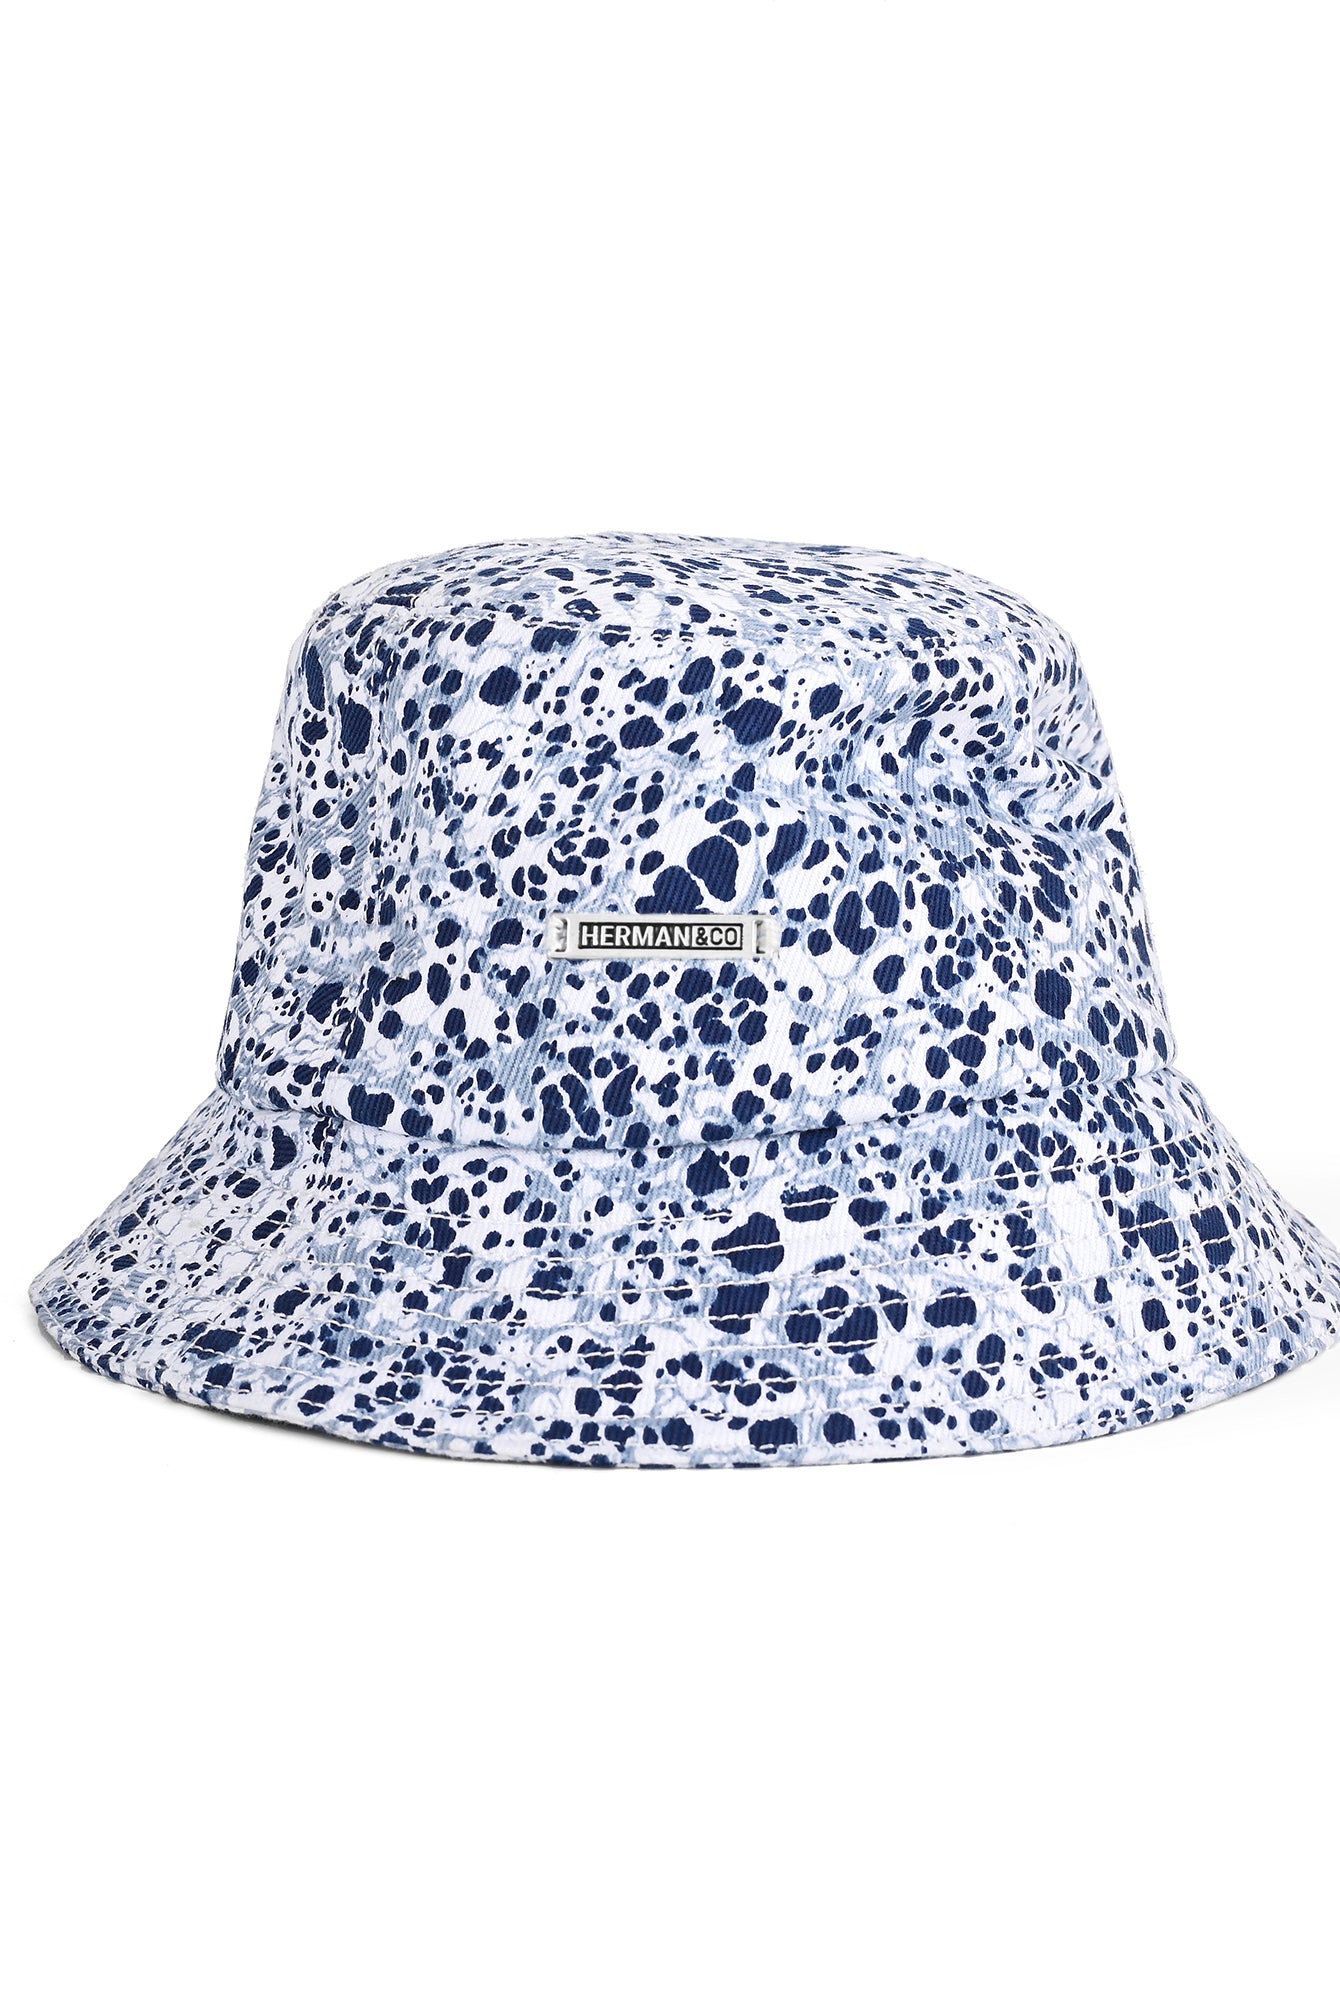 Shop Marble Crack Printed Bucket Hat  – HERMAN&CO